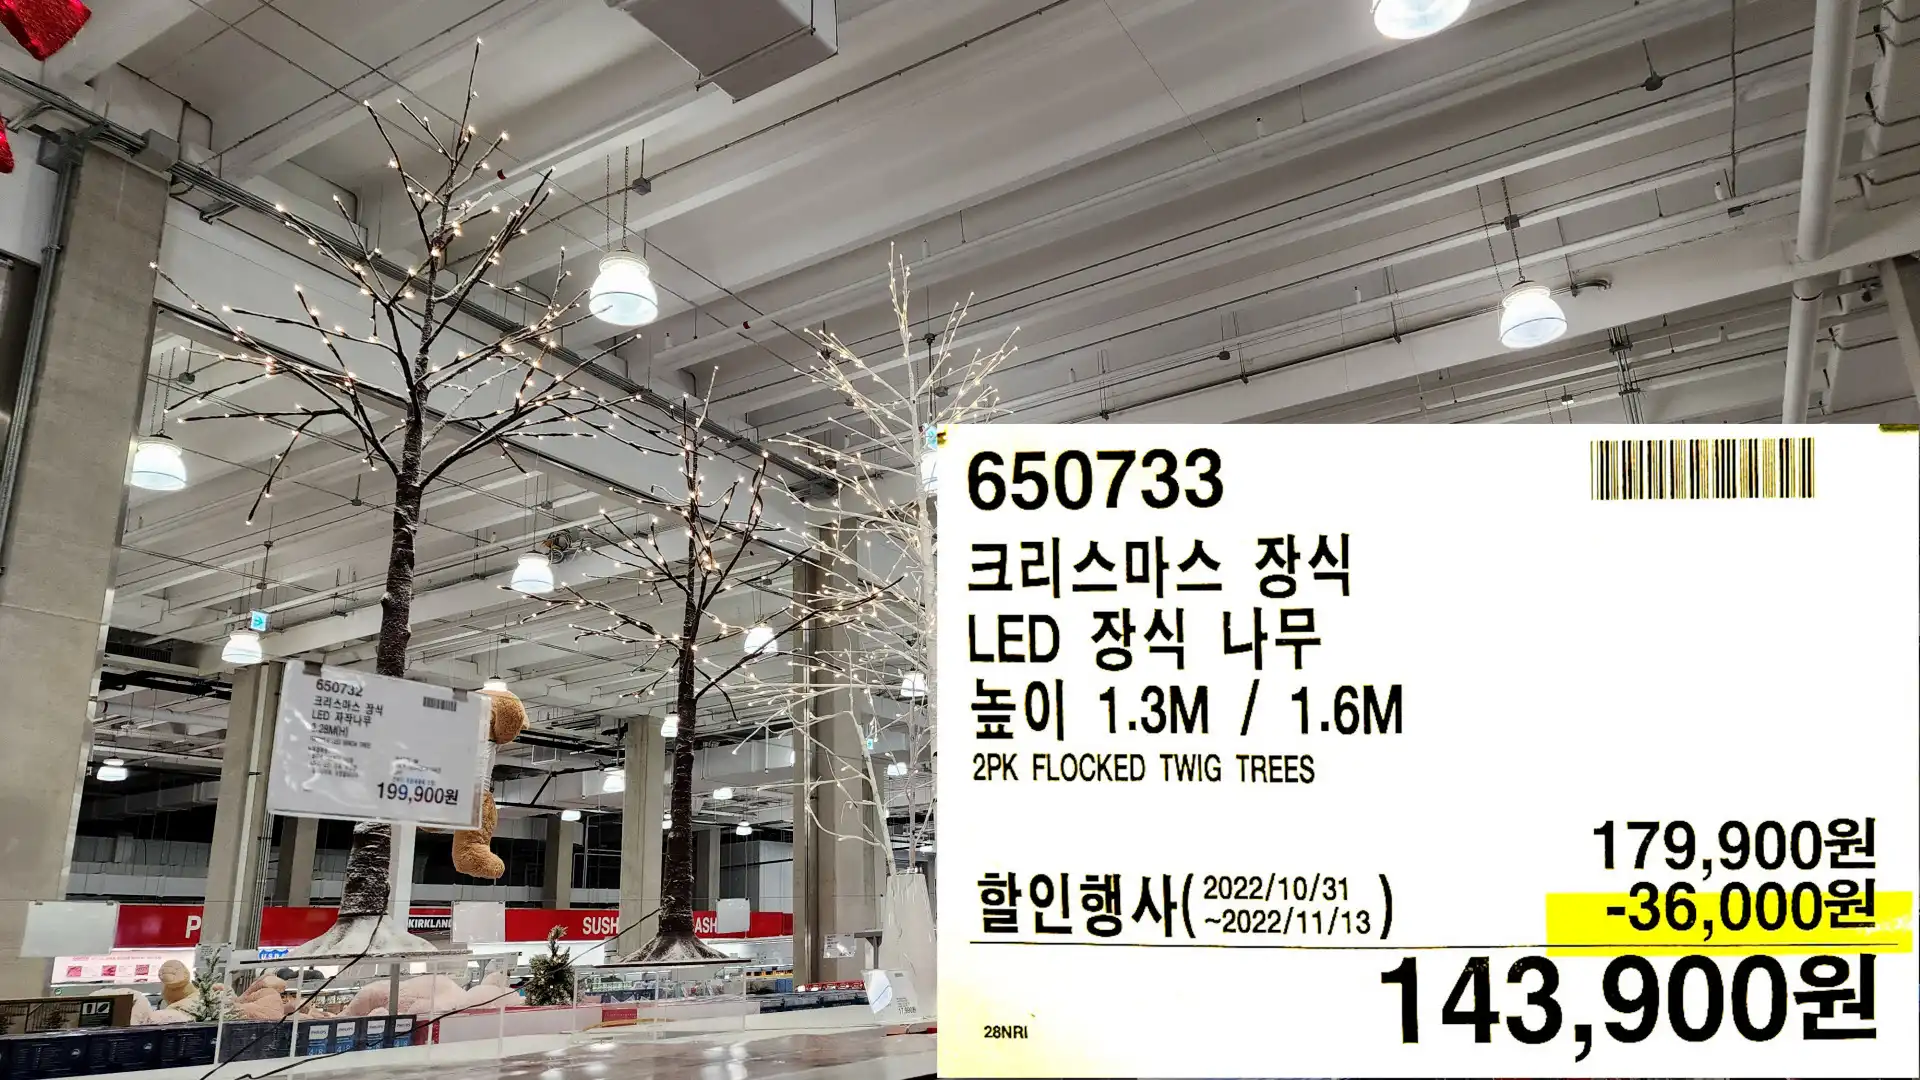 크리스마스 장식
LED 장식 나무
높이 1.3M / 1.6M
2PK FLOCKED TWIG TREES
143,900원